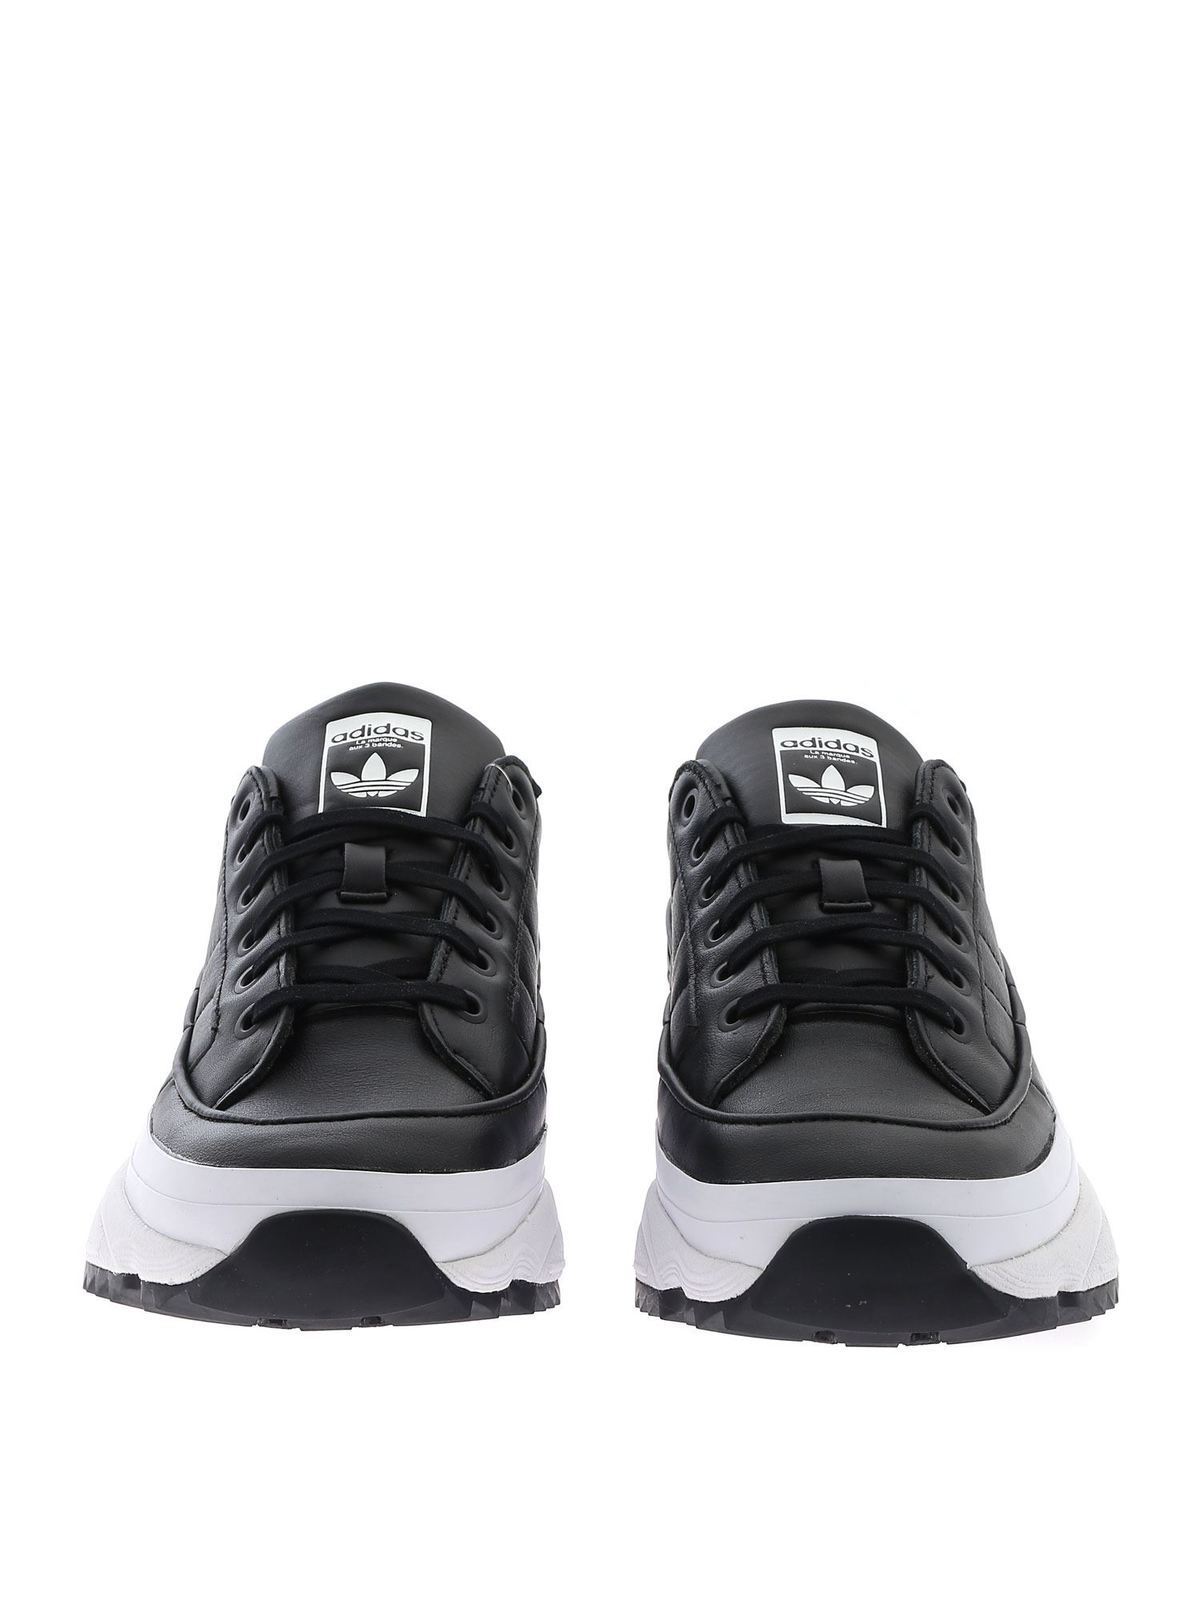 adidas originals kiellor sneaker in black